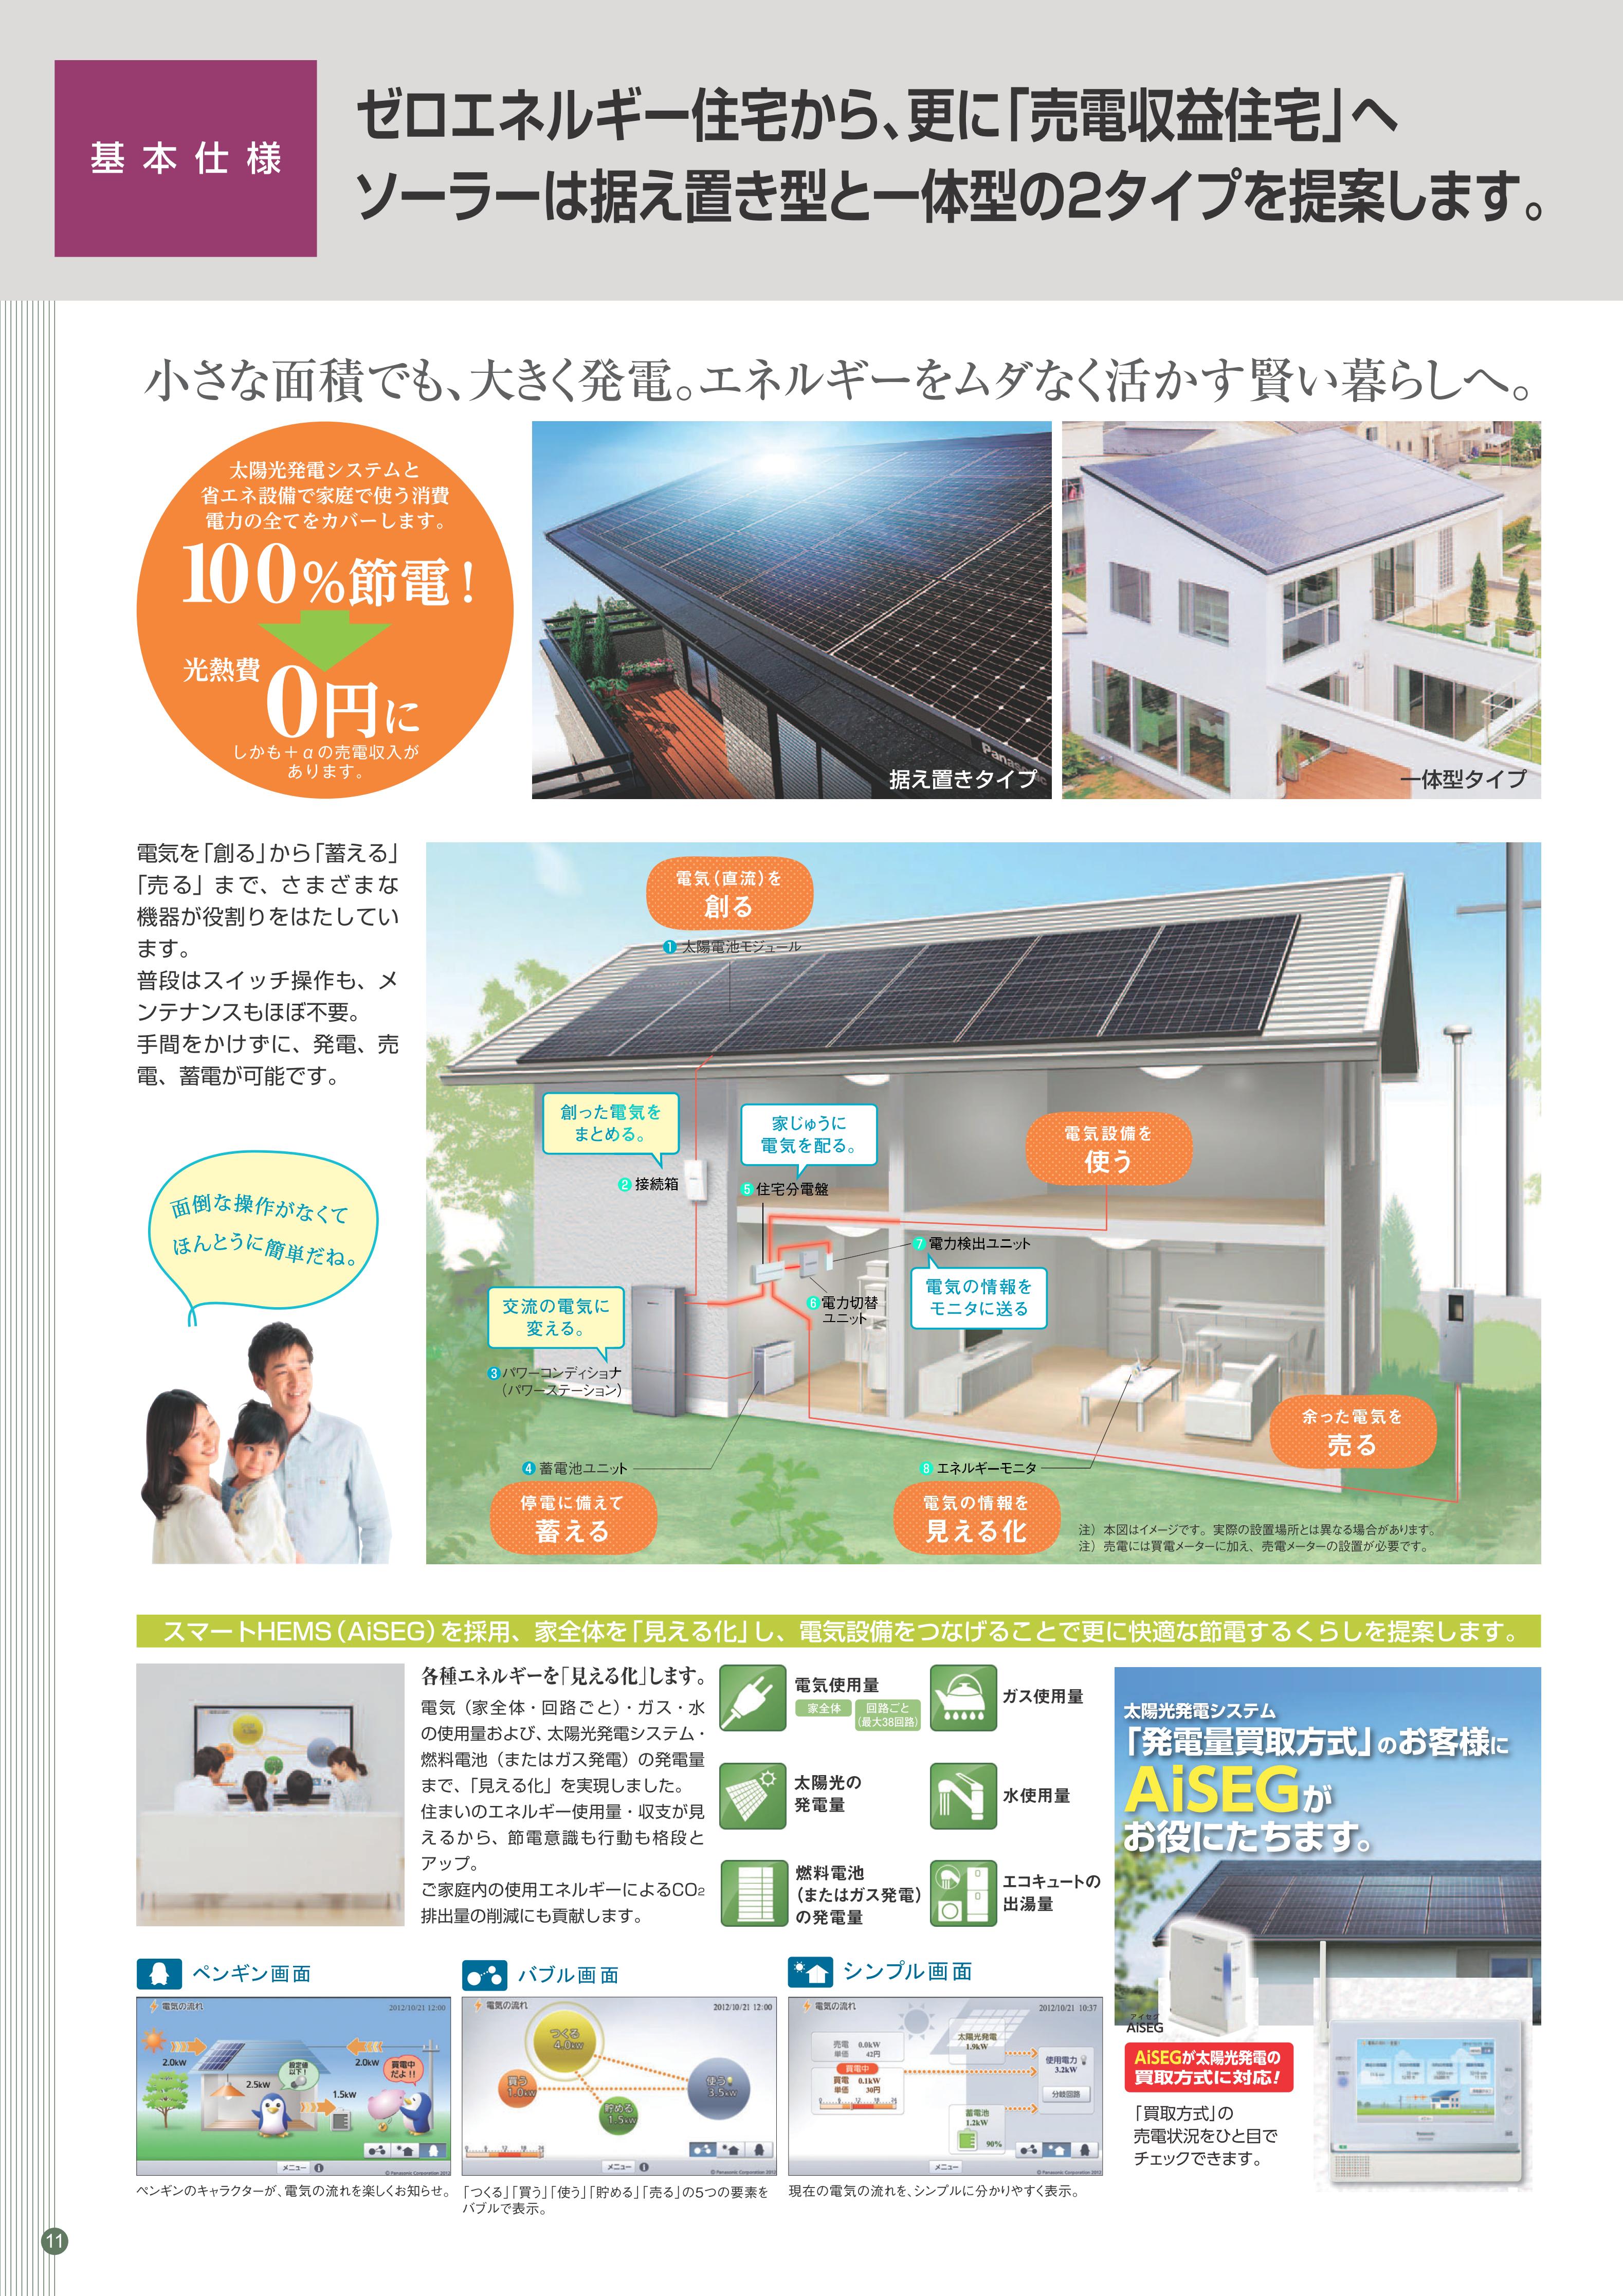 高性能ゼロエネルギー住宅の紹介